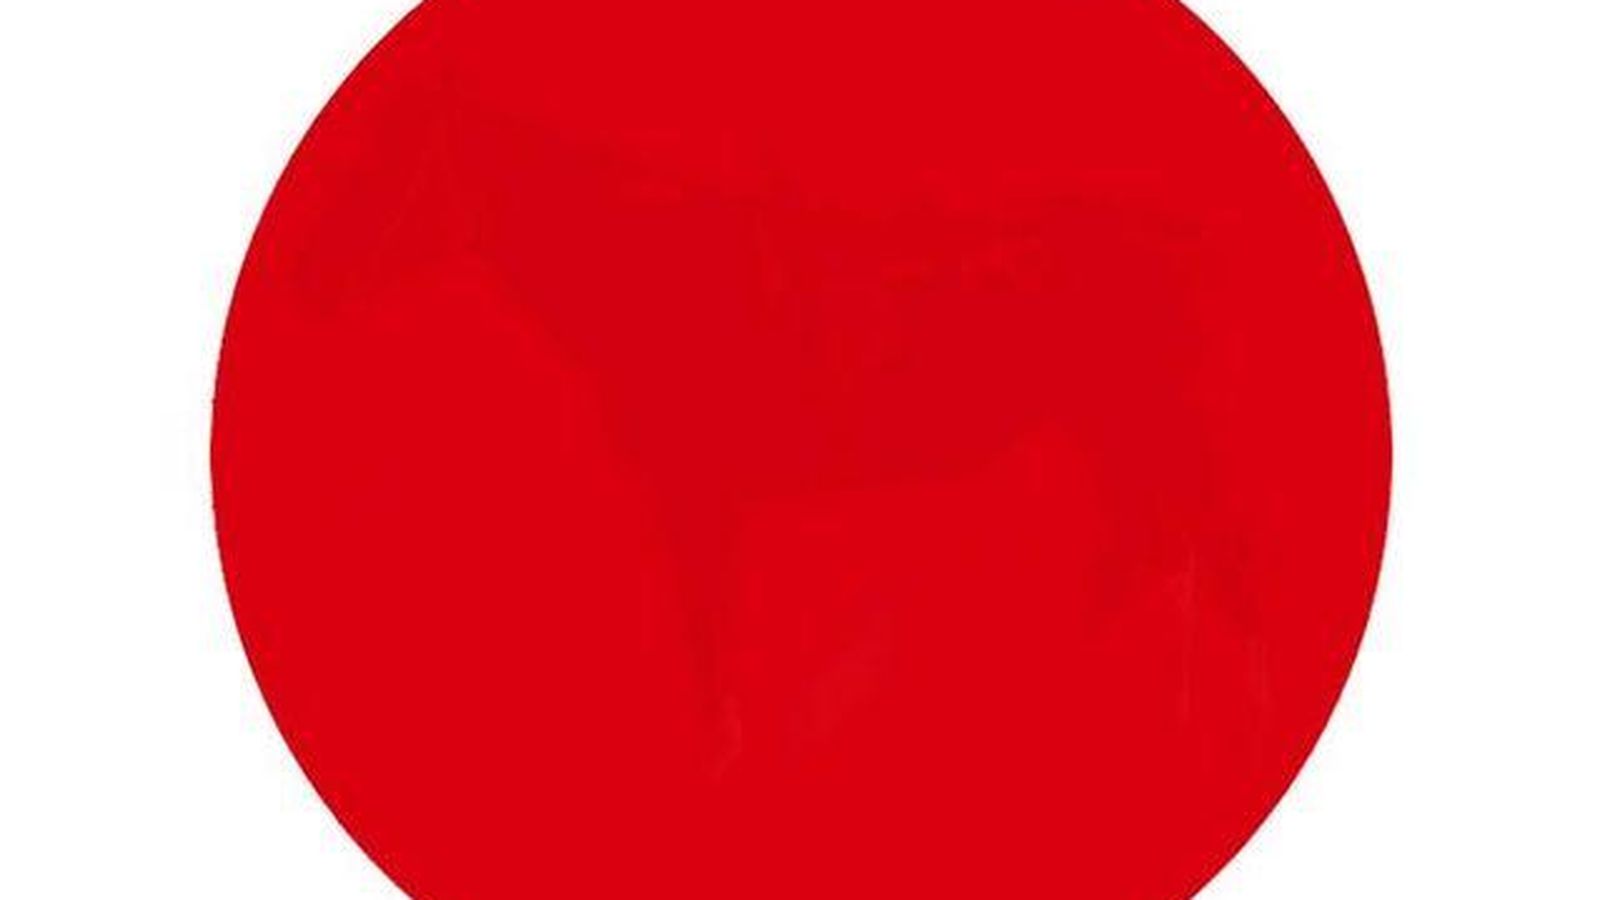 Foto: ¿Qué se esconde detrás del círculo rojo?